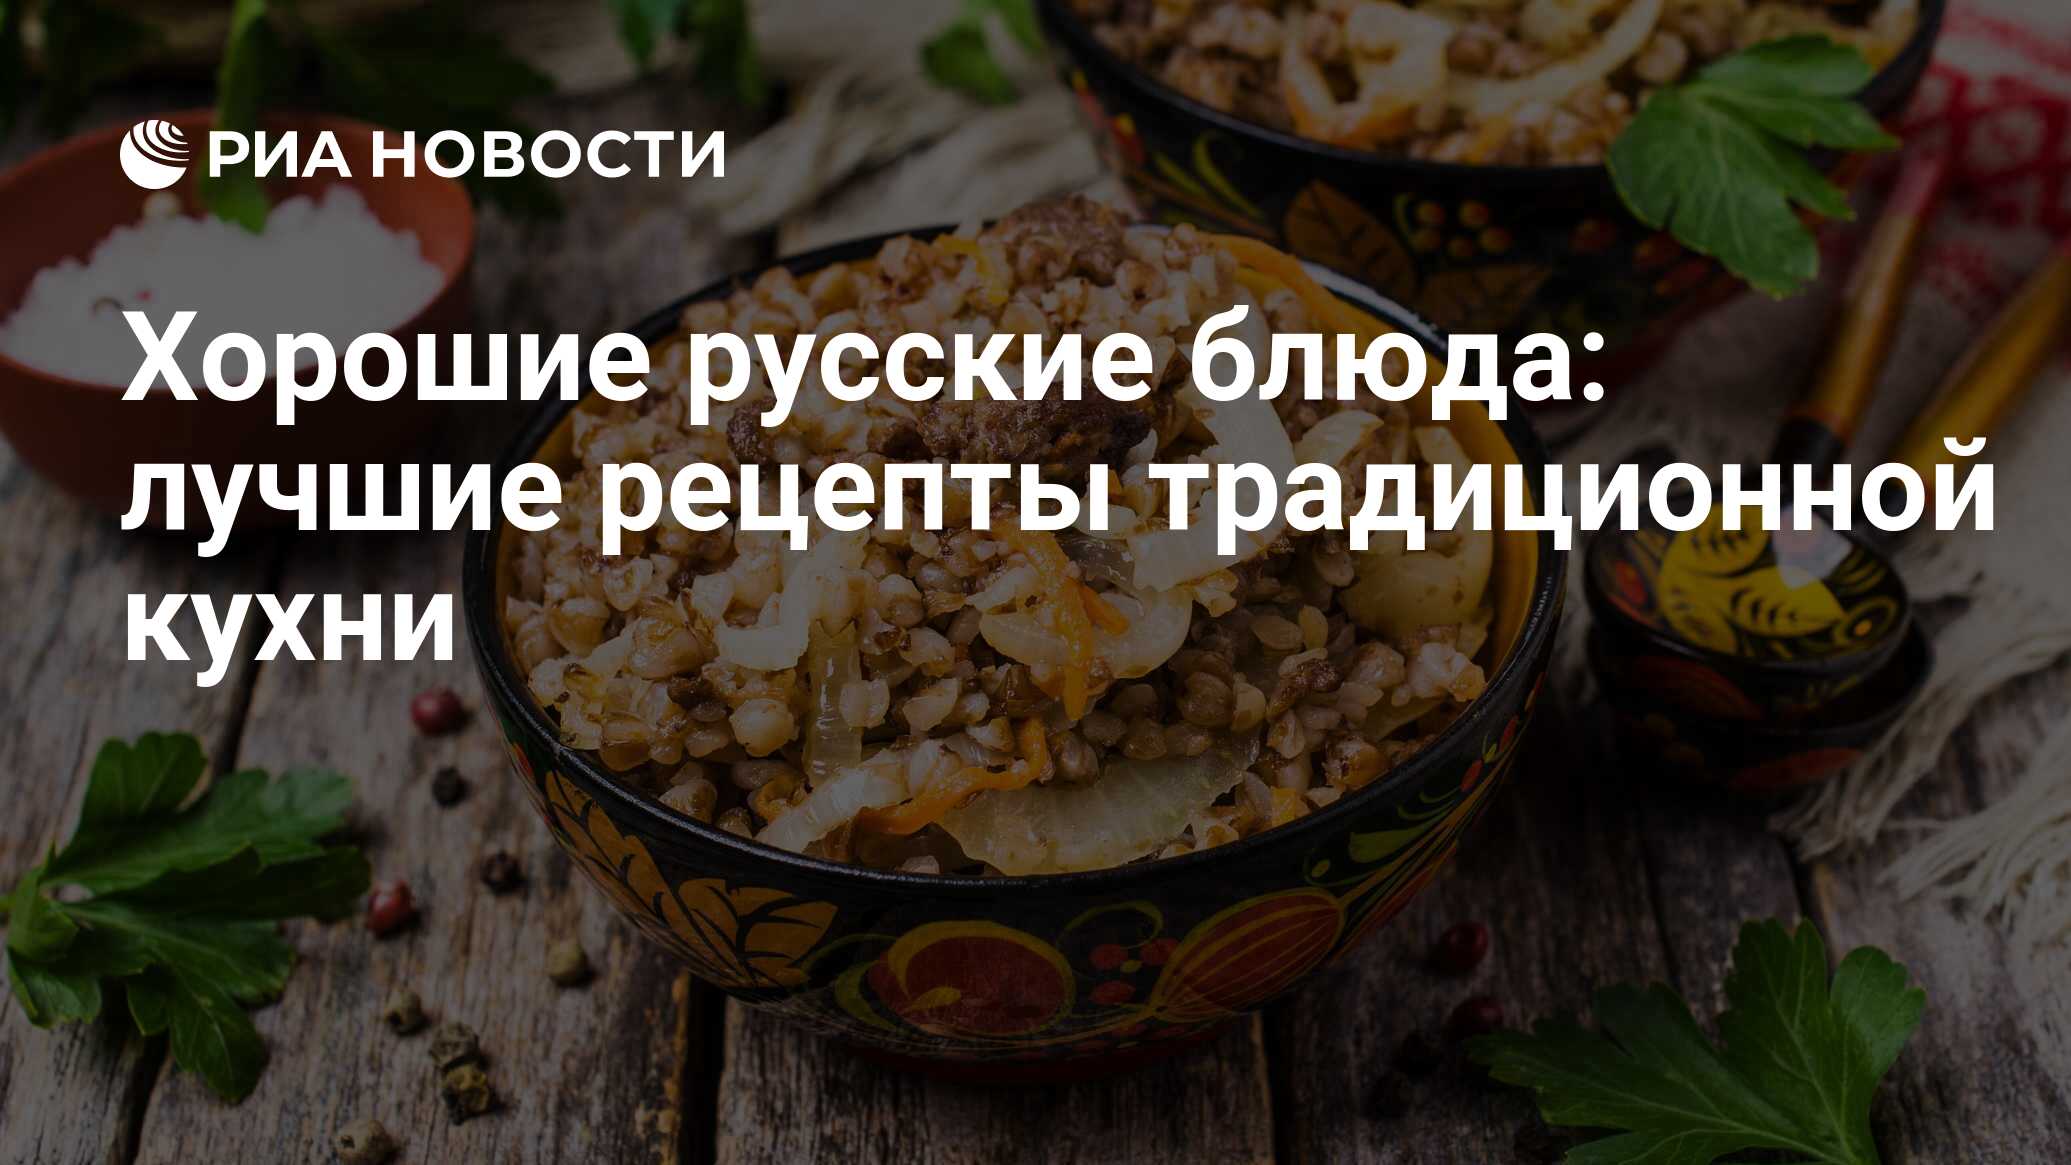 Основные блюда - рецепты высокой кухни на ростовсэс.рф